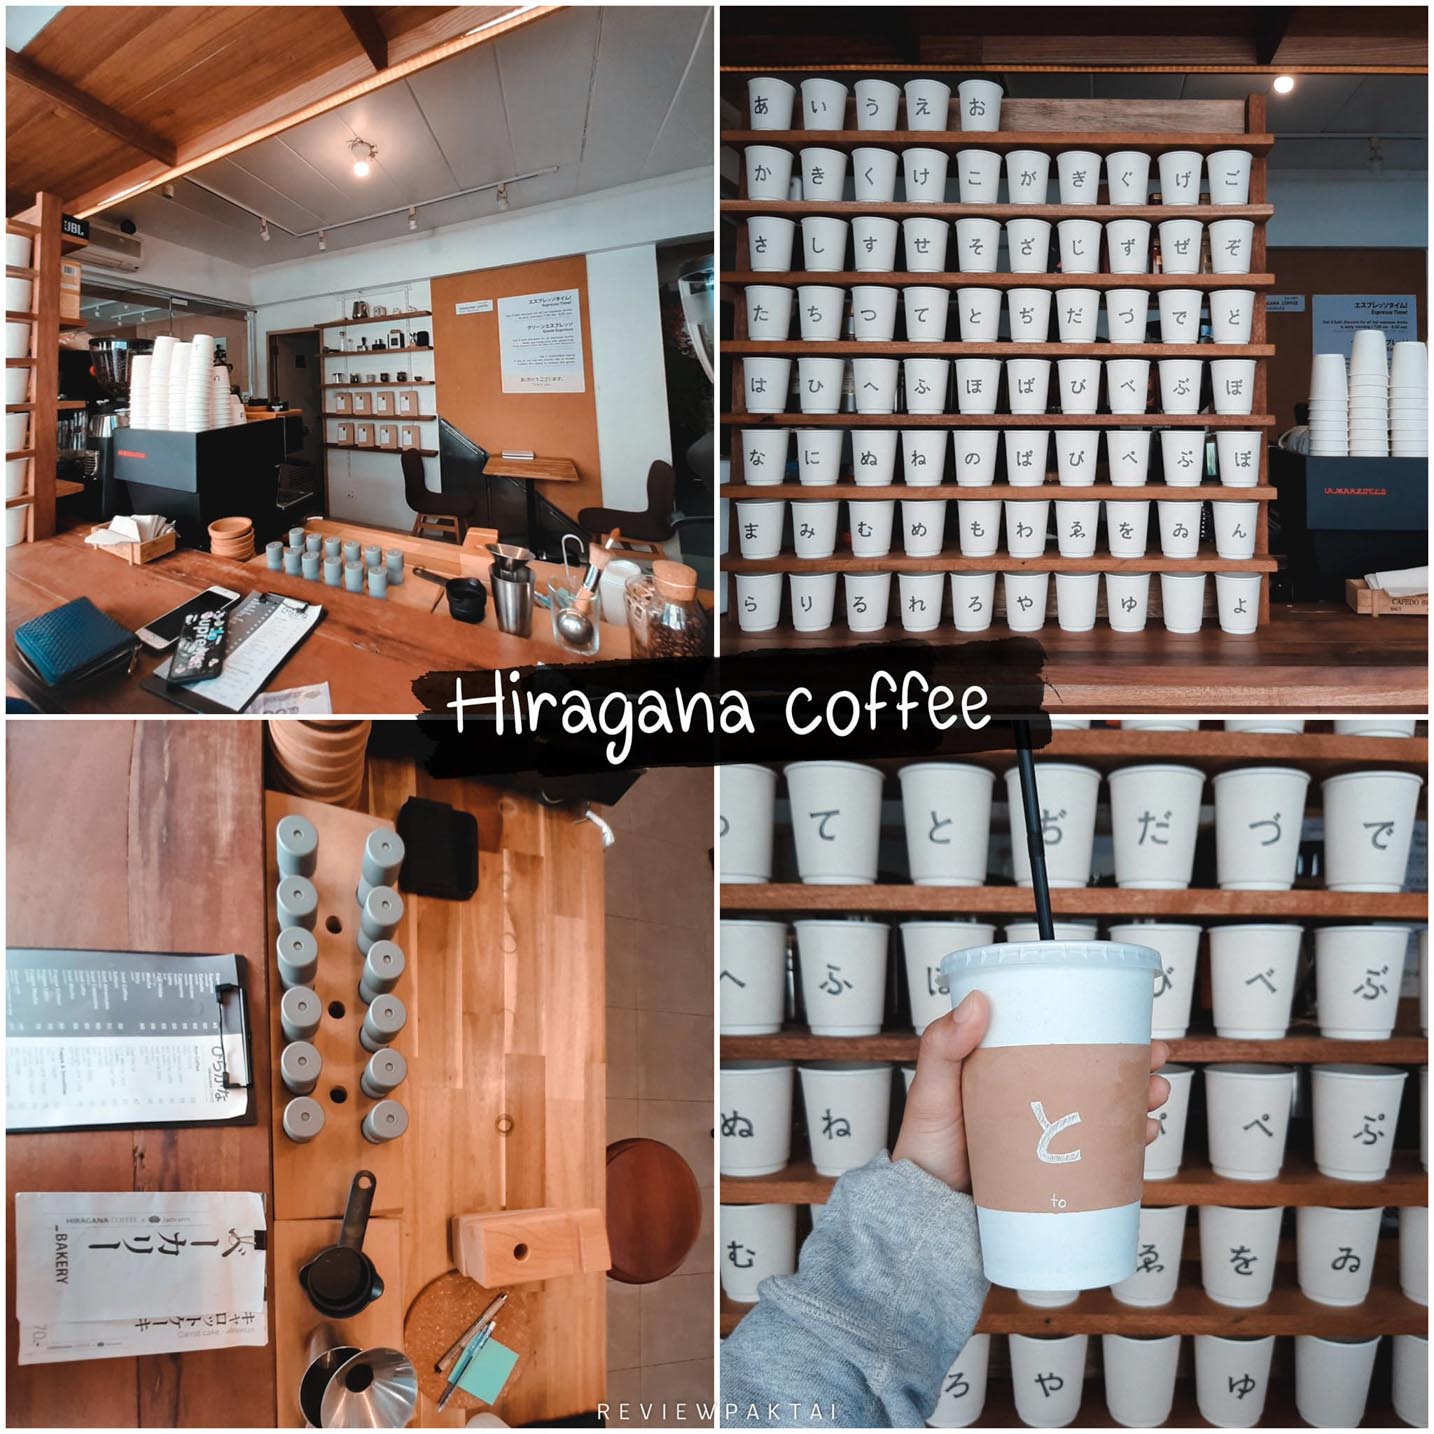 Hiragana Coffee Phuket, милый магазинчик в японском стиле. Хоть он и маленький, но не обычный. Приходите, сделайте красивые фотографии и загляните под разными углами.